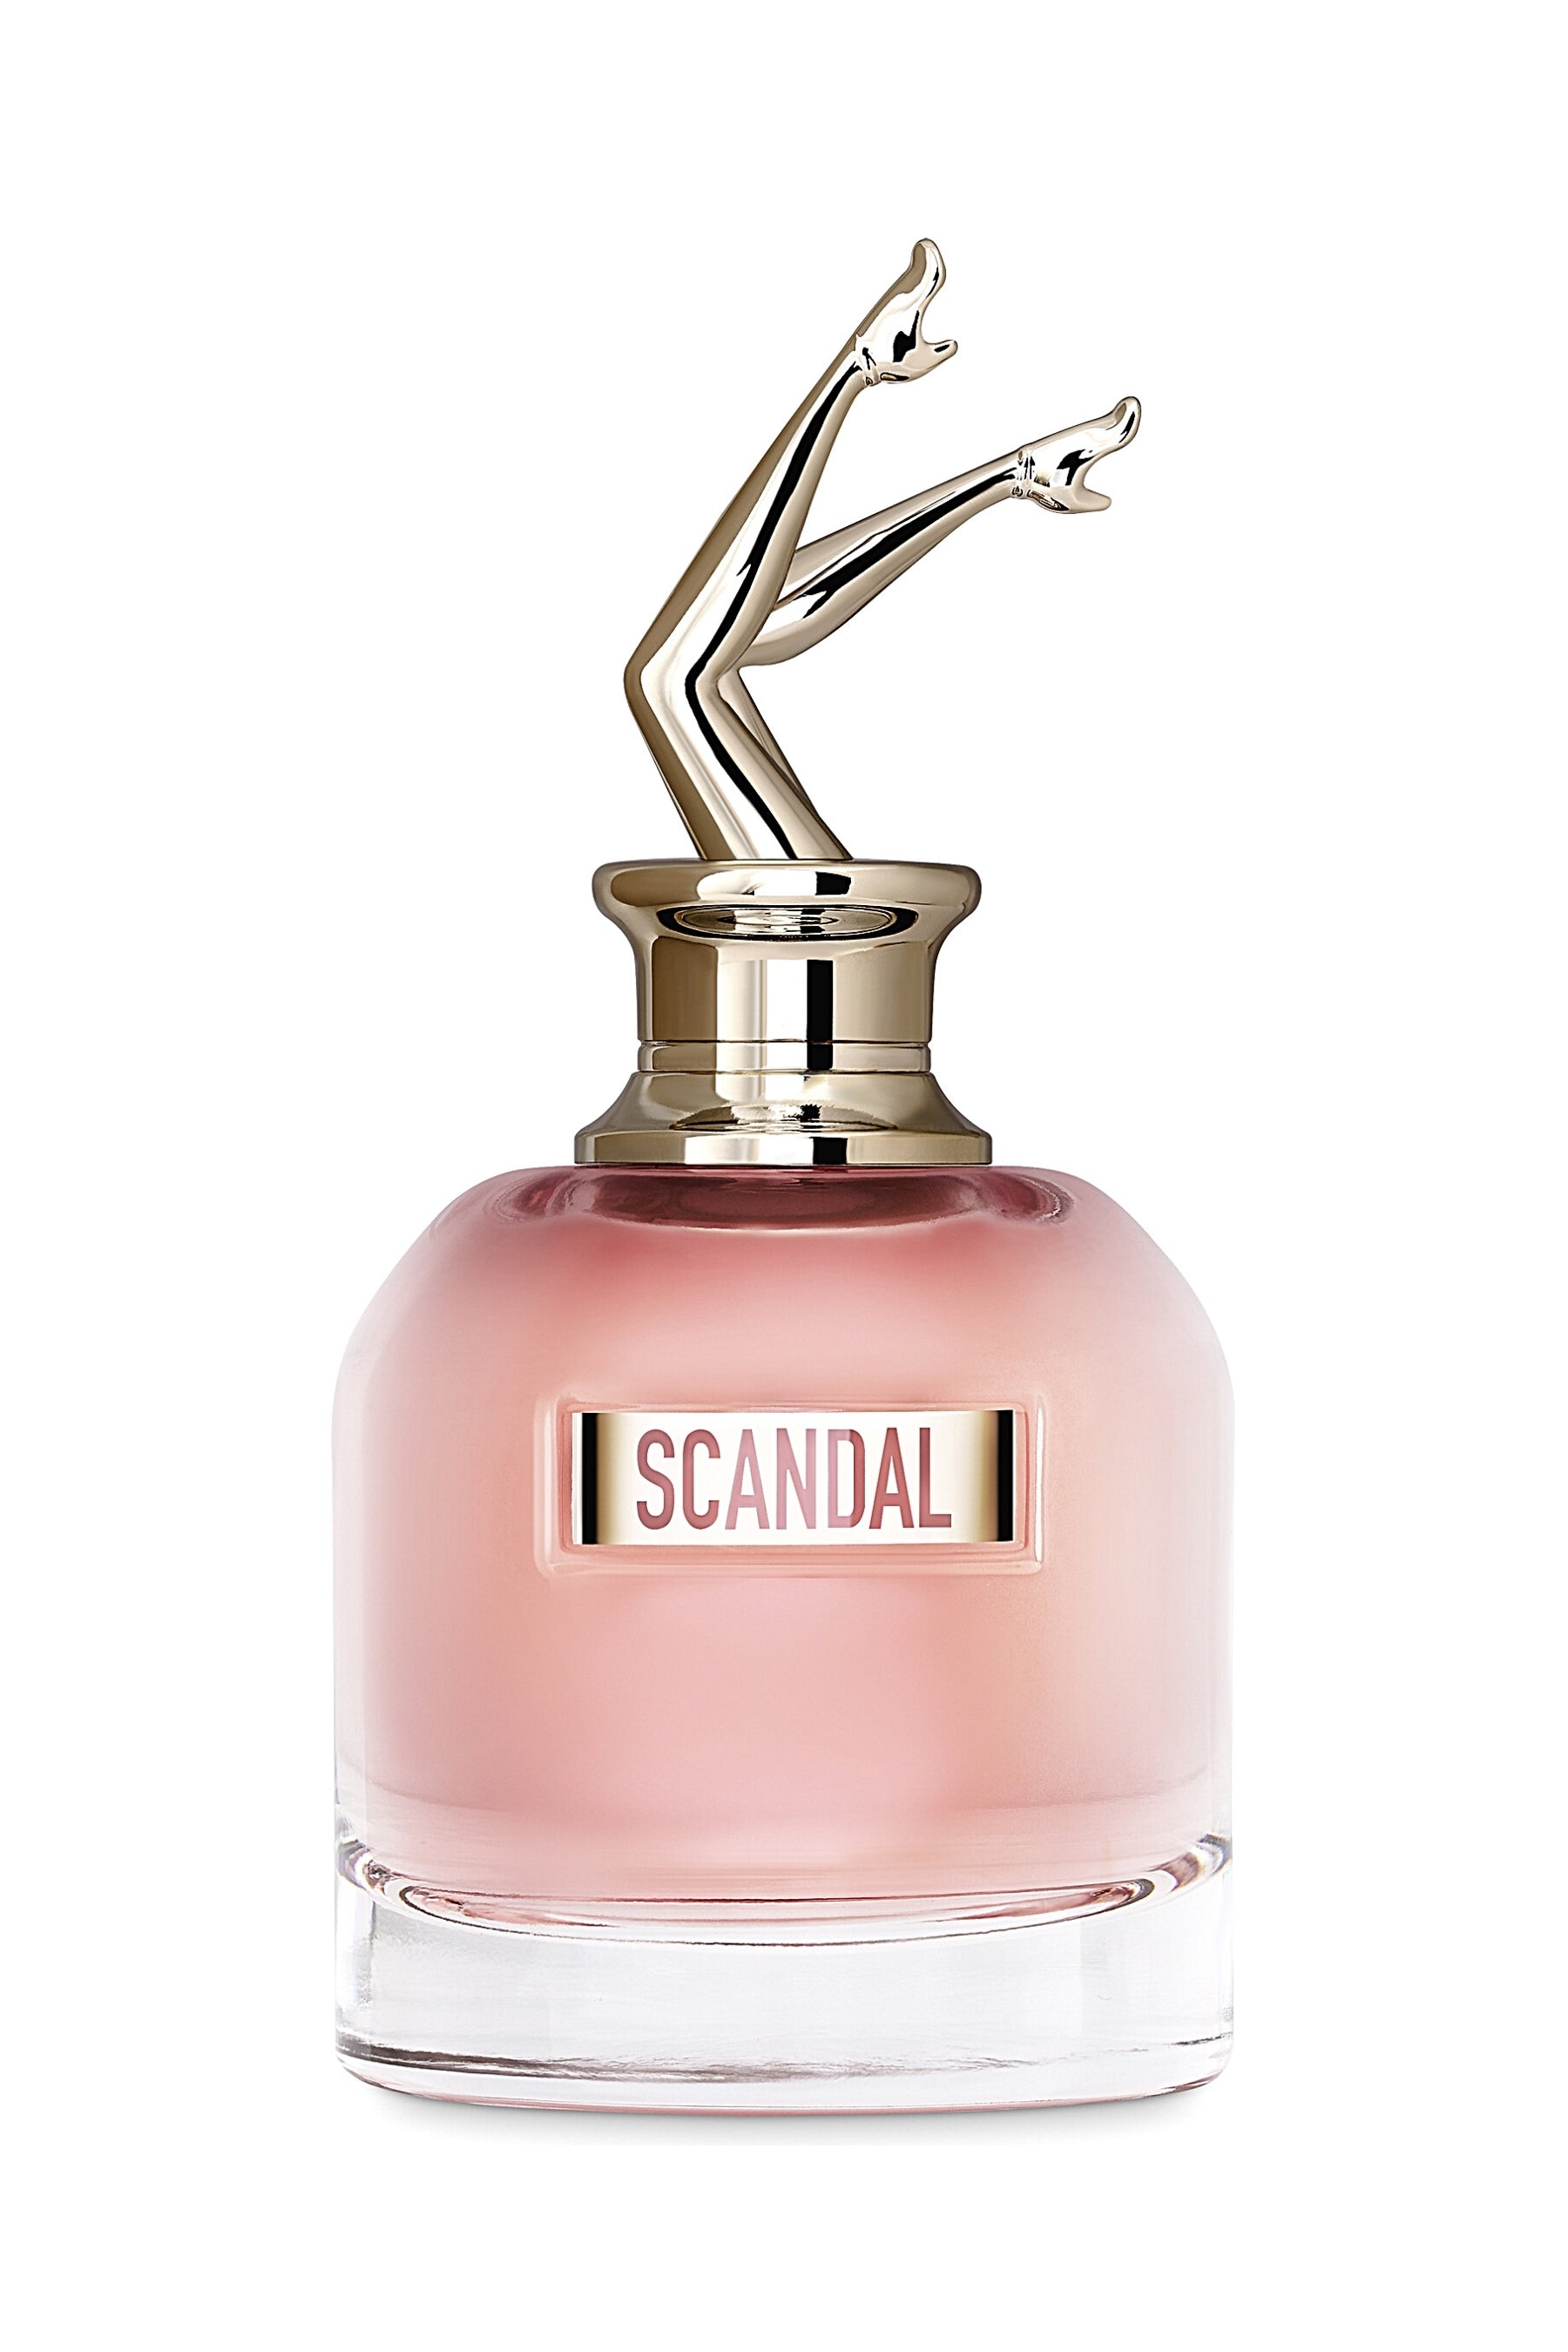 Jean Paul Gaultier | Scandal Eau de Parfum